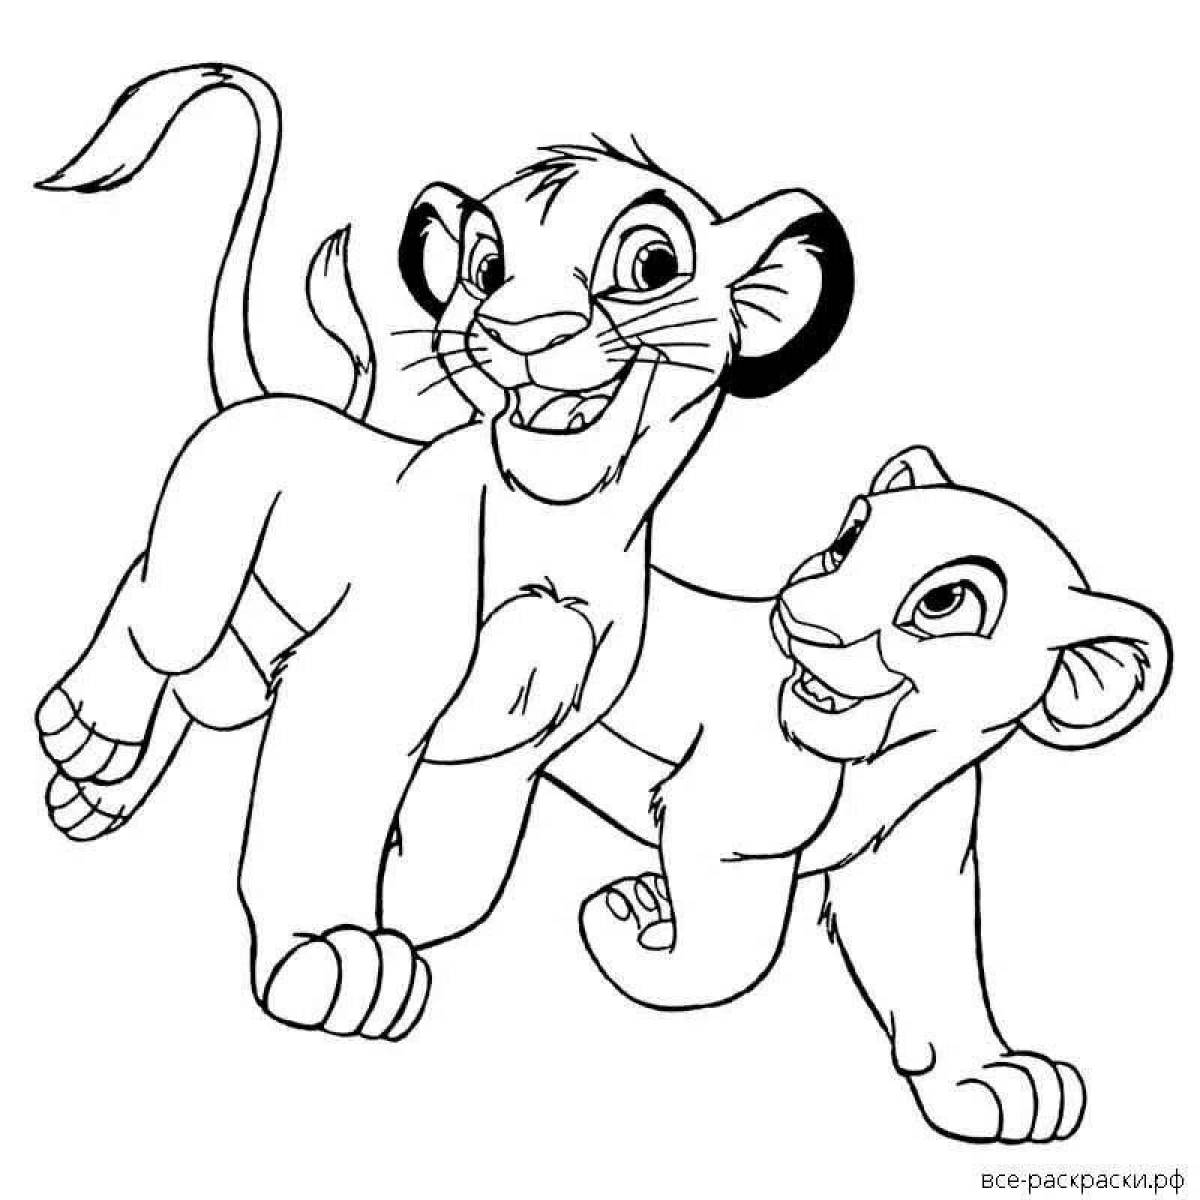 Colorful Simba and Nala coloring book